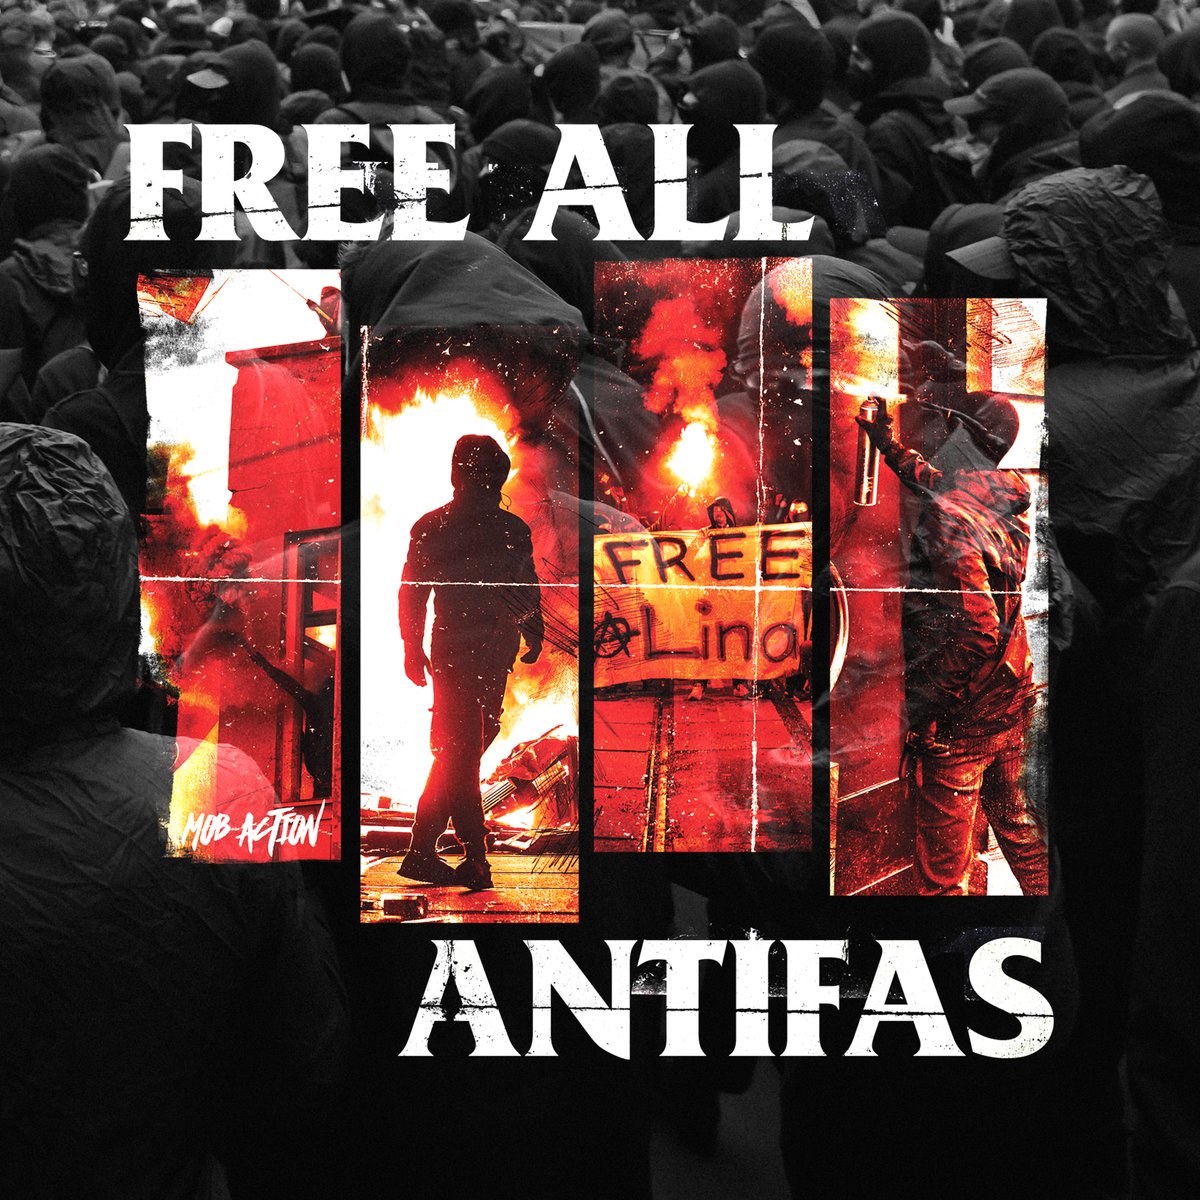 🔥FEUER UND FLAMME DER REPRESSION!

Heute in deiner Stadt: soli-antifa-ost.org/x/

Und Samstag (3.6.) alle zum Tag X nach #Leipzig !

#FreeLina #FreeAllAntifas #WirSindAlle129 #tagXantifaost #antifaost #LinaE #siamotuttiantifascisti #afa #antifa #antifaschismus #freeallantifas